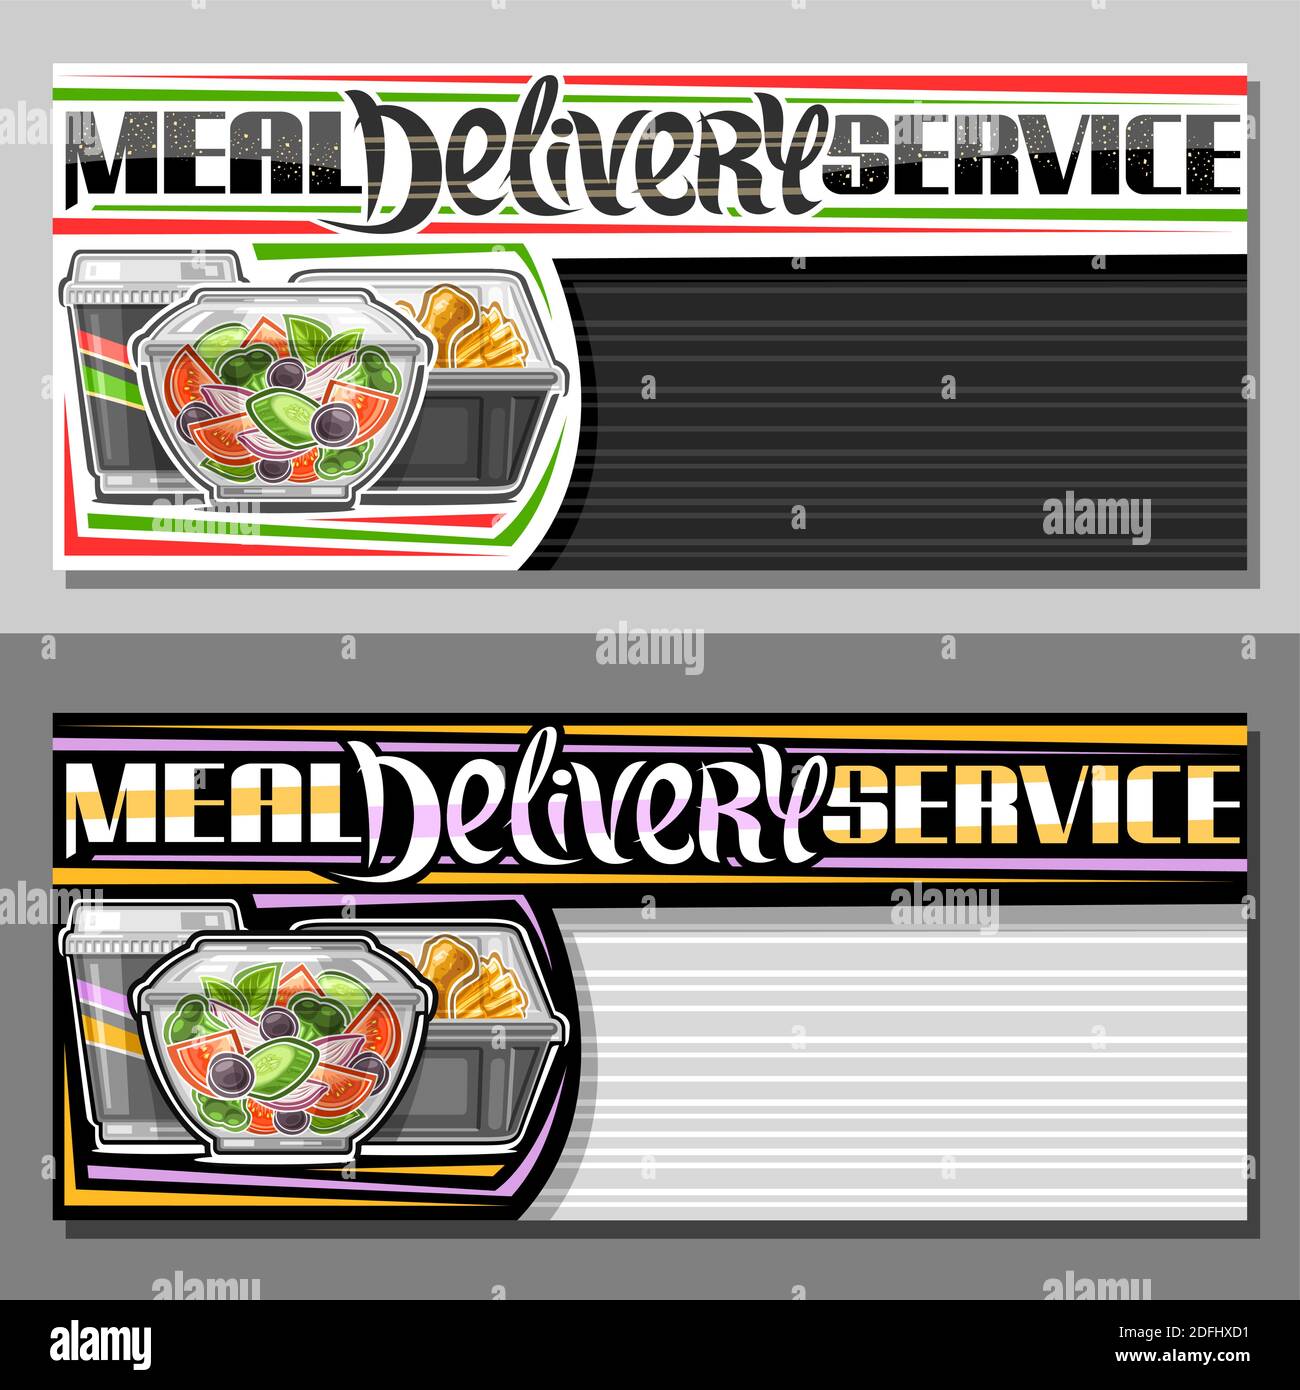 Modèles vectoriels pour le service de livraison de repas avec espace de copie, coupon décoratif avec illustration de salade fraîche dans un bol transparent, poulet cuit et soda Illustration de Vecteur